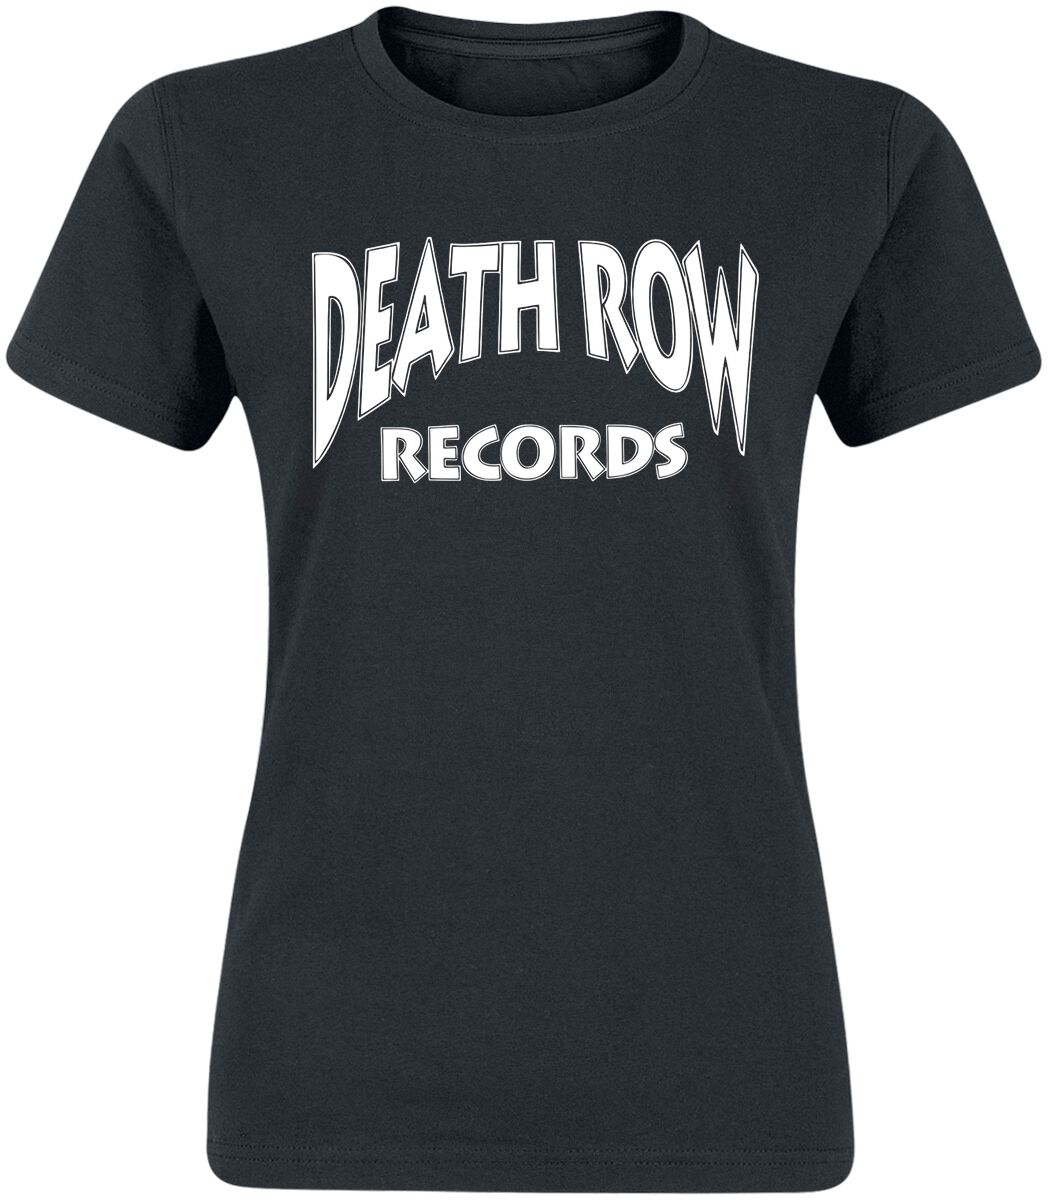 T-Shirt Manches courtes de Death Row Records - Classic Logo - S à XXL - pour Femme - noir